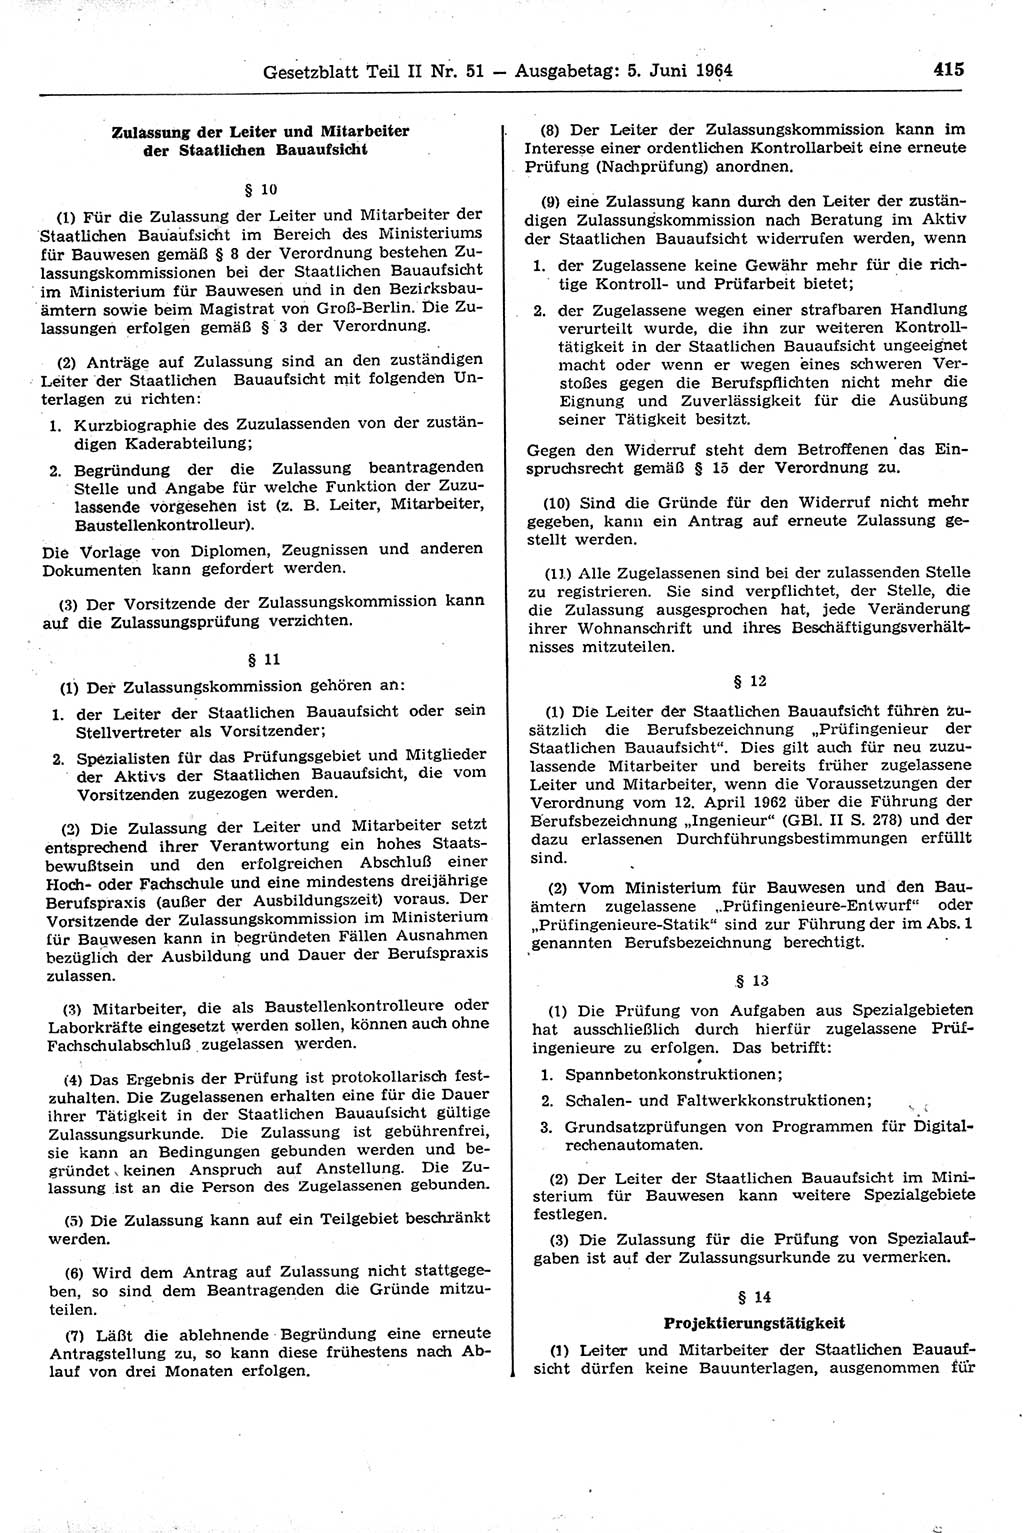 Gesetzblatt (GBl.) der Deutschen Demokratischen Republik (DDR) Teil ⅠⅠ 1964, Seite 415 (GBl. DDR ⅠⅠ 1964, S. 415)